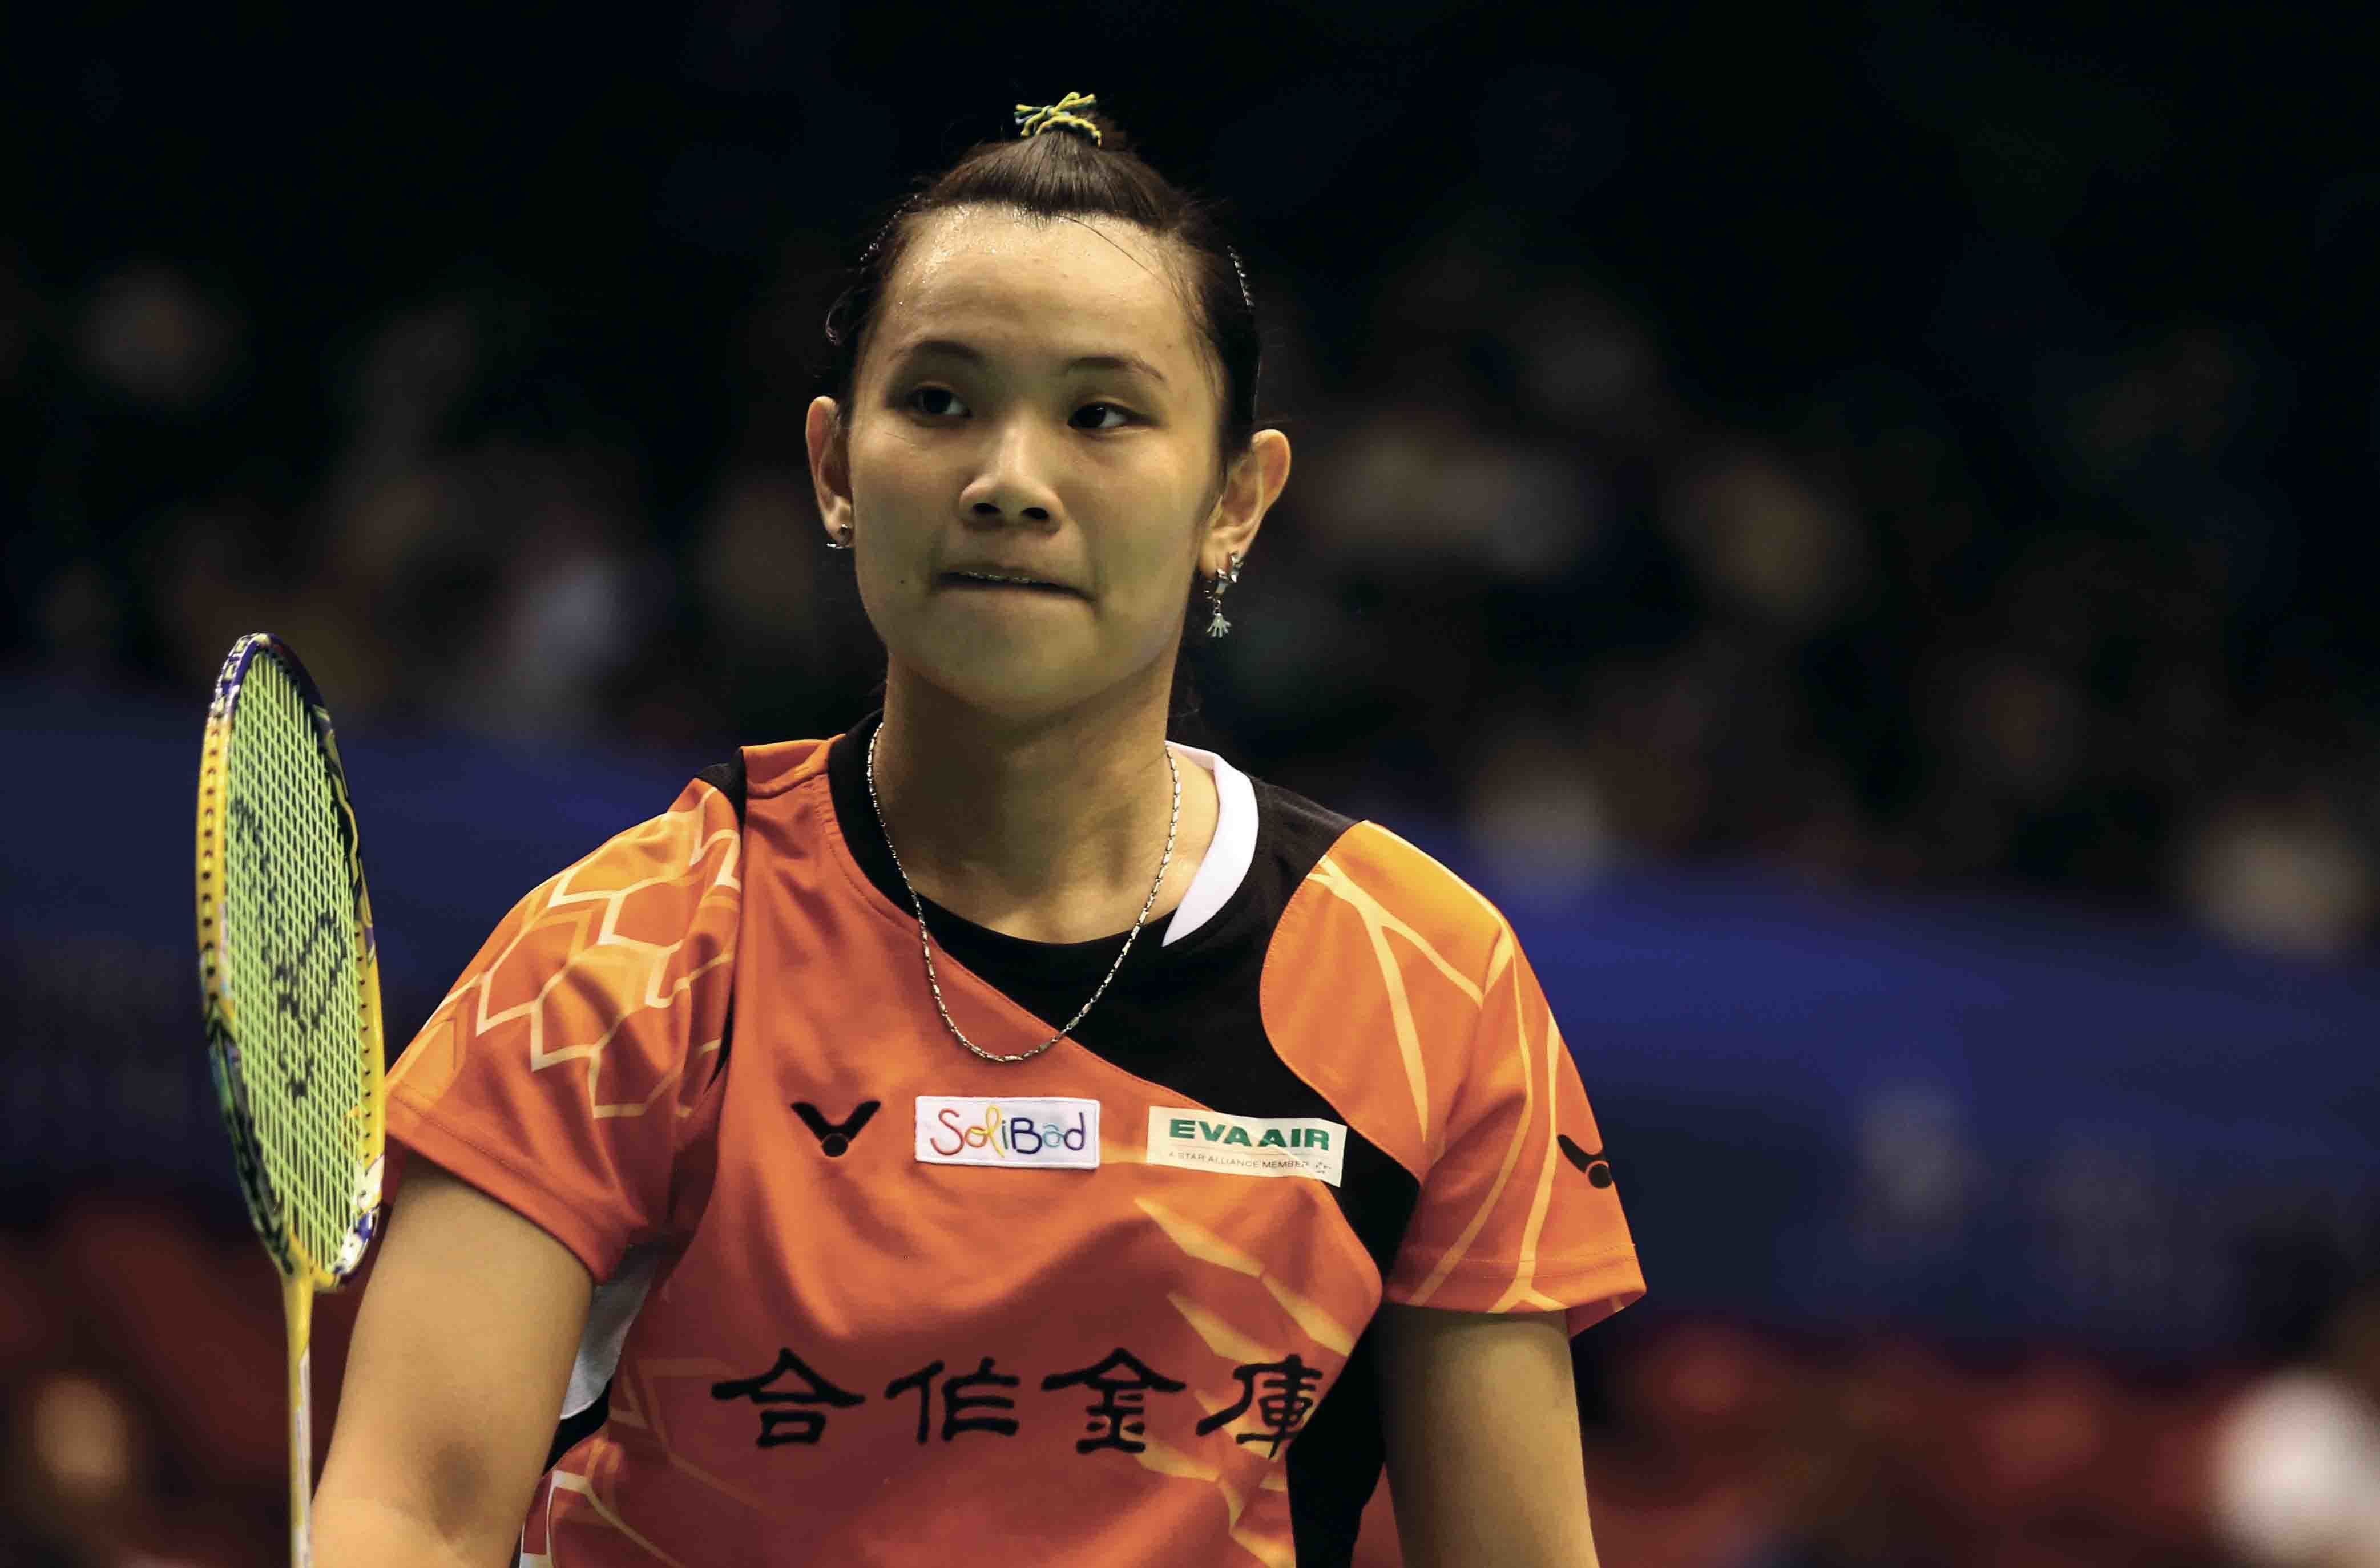 1_2014年香港羽球冠軍戰戴資穎以高超的球技直落二擊敗對手封后，這也是她20歲生涯第3座羽球超級系列賽冠軍。.jpg